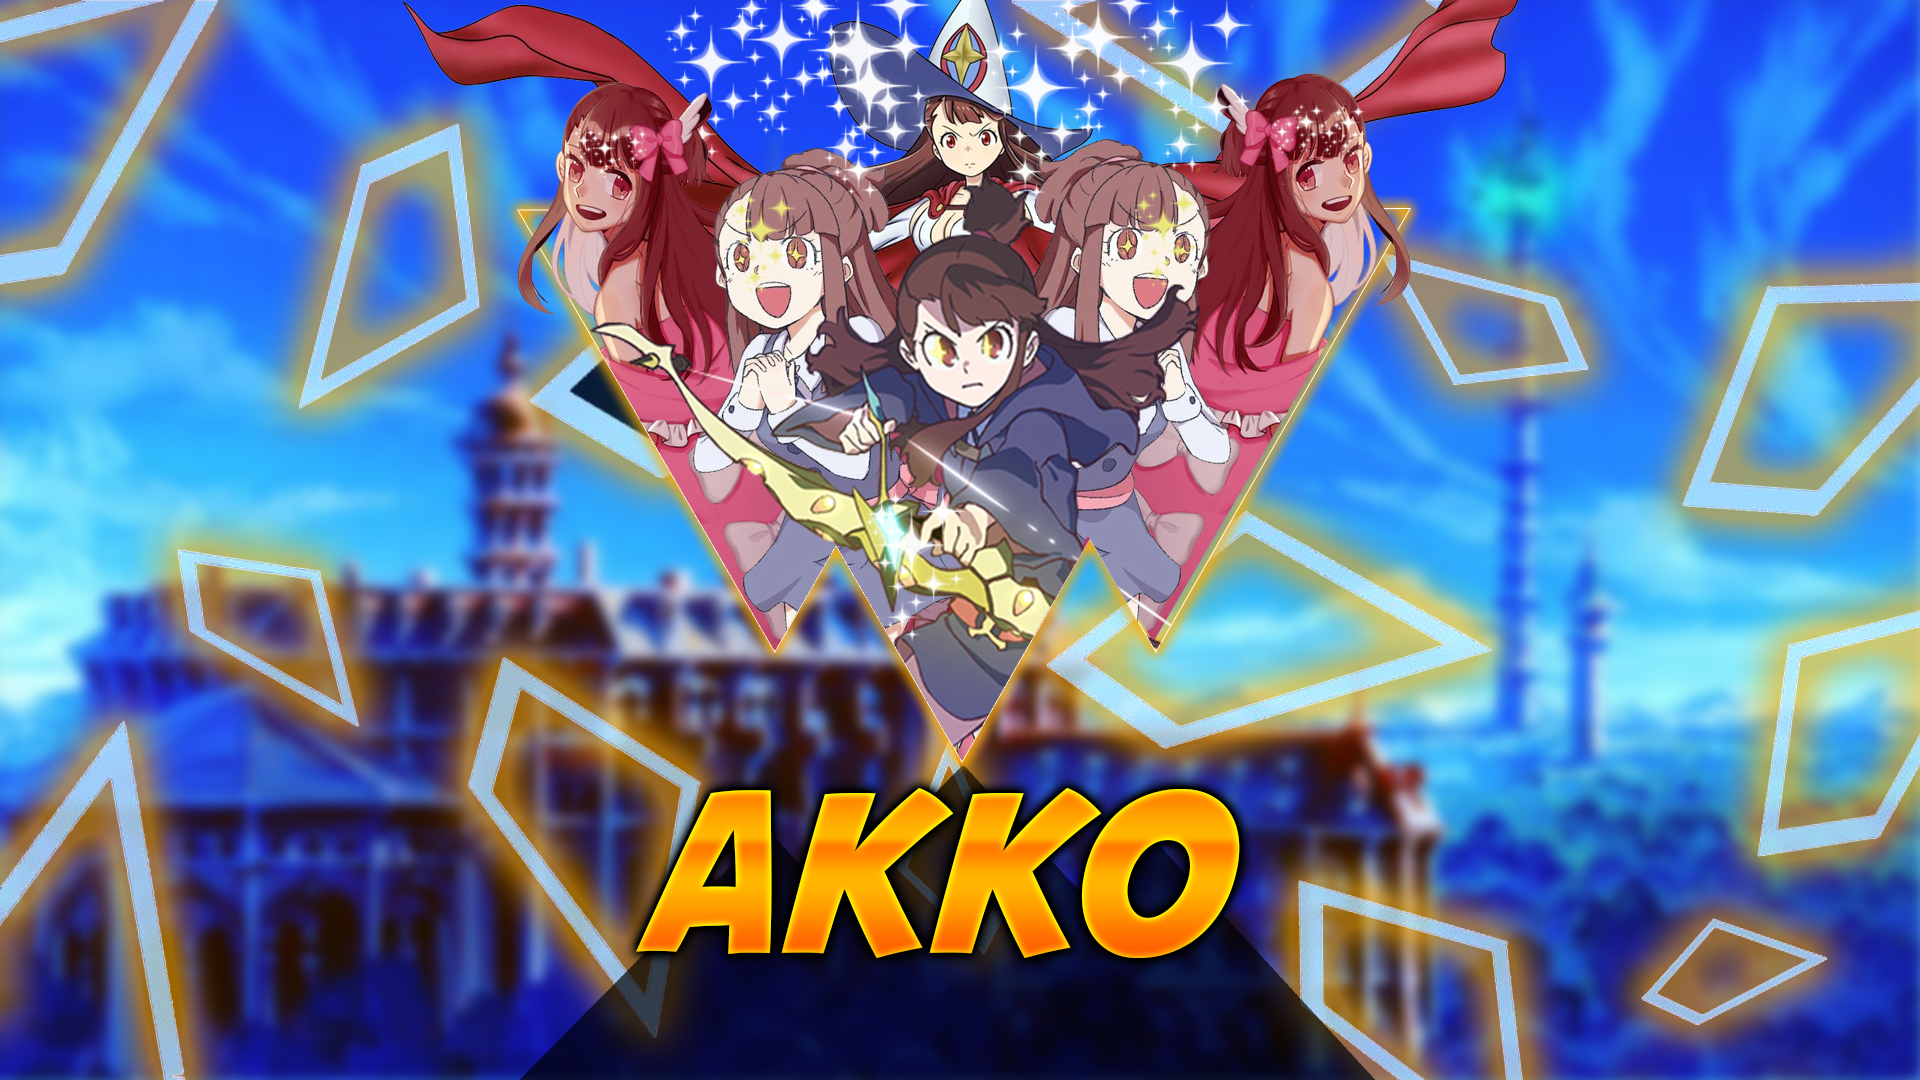 Kagari Atsuko Little Witch Academia Kagari Akko Anime Anime Girls Magic Fantasy Girl 1920x1080